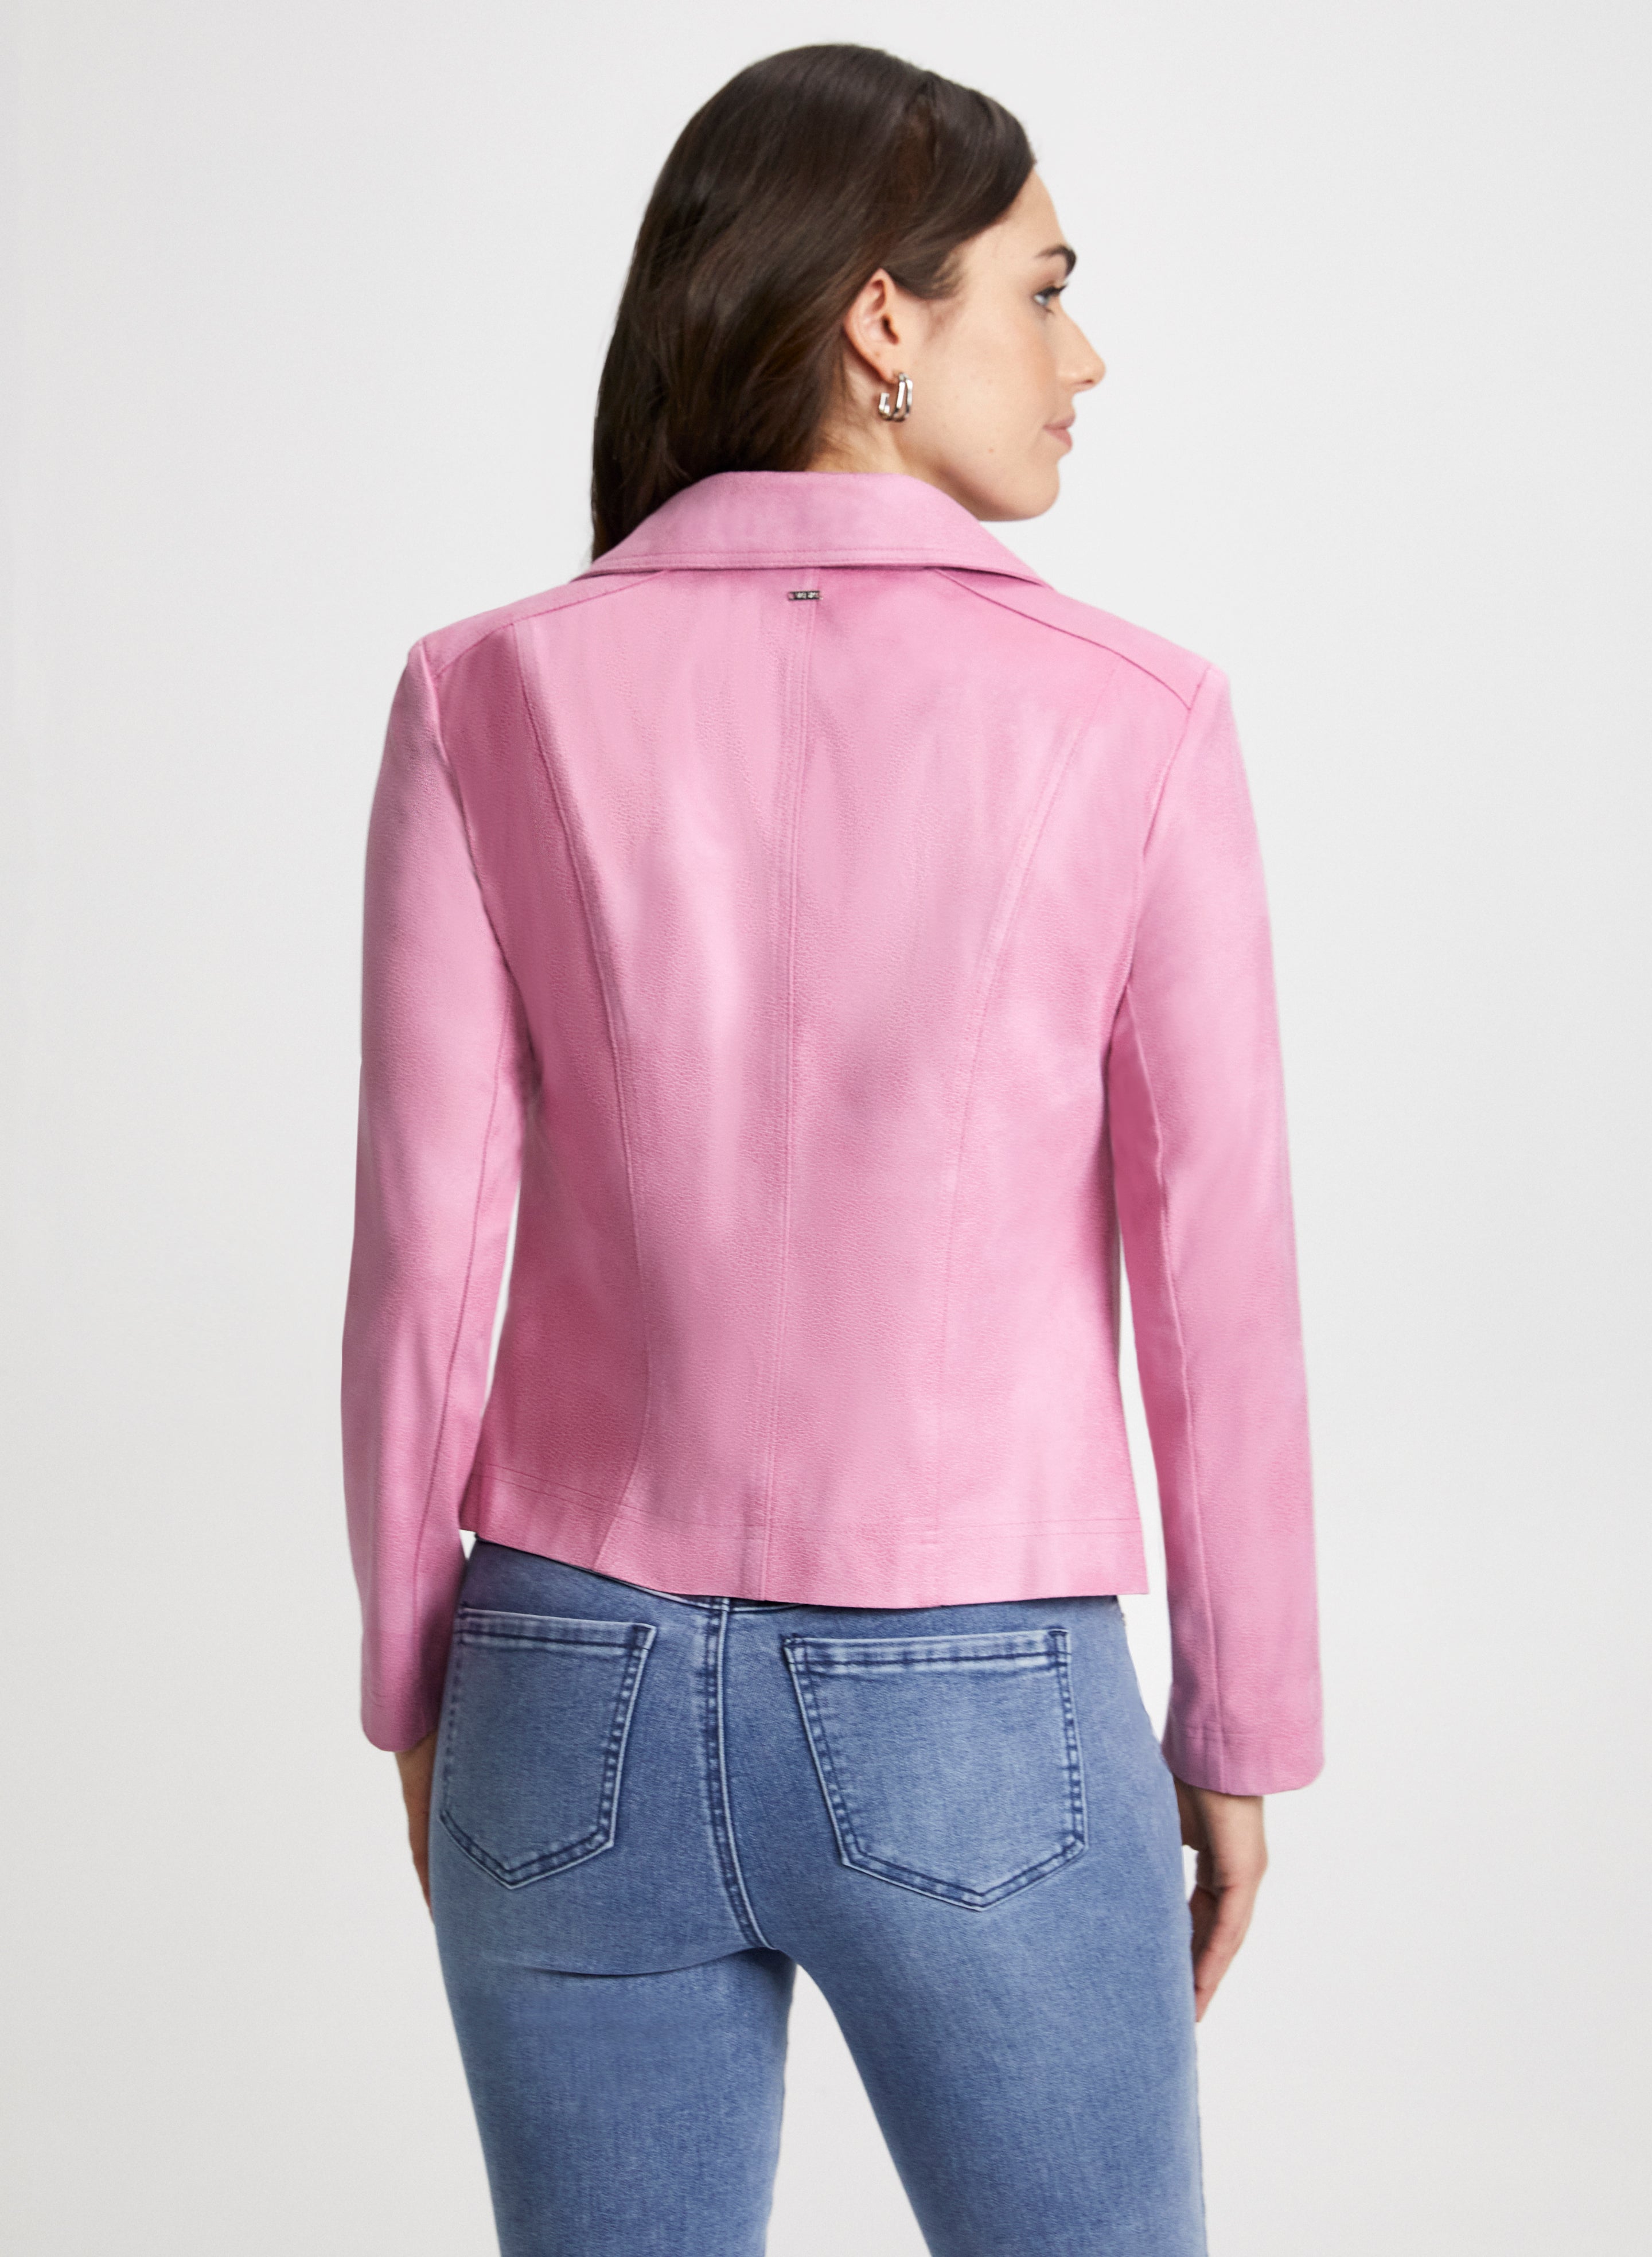 Buy Women Pink Textured Casual Jacket Online - 792337